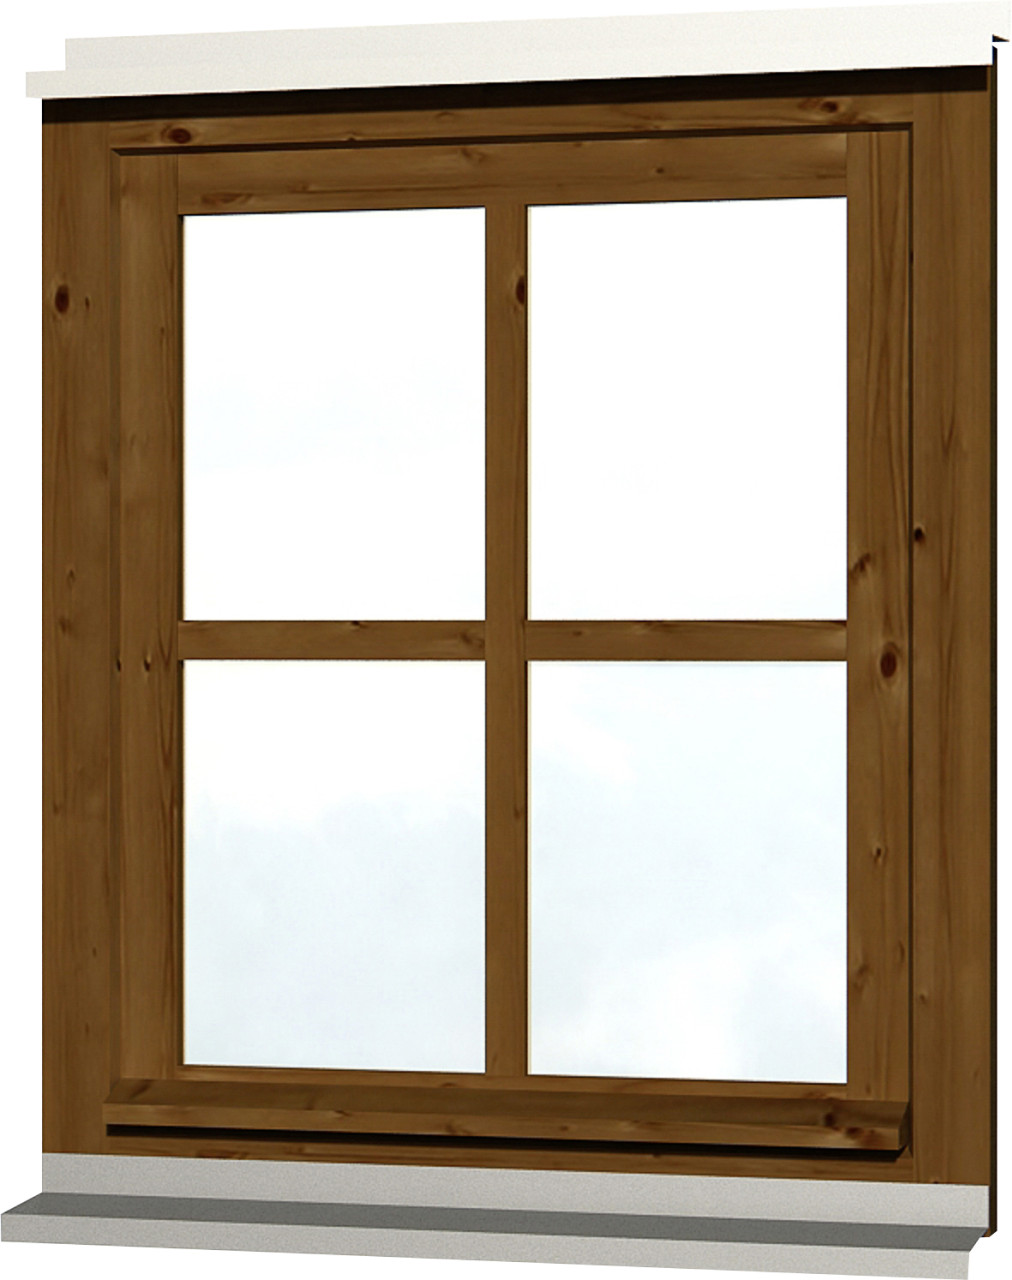 SKAN HOLZ Einzelfenster Rahmenaußenmaß 69,1 x 82,1 cm lasiert in Nussbaum von SkanHolz